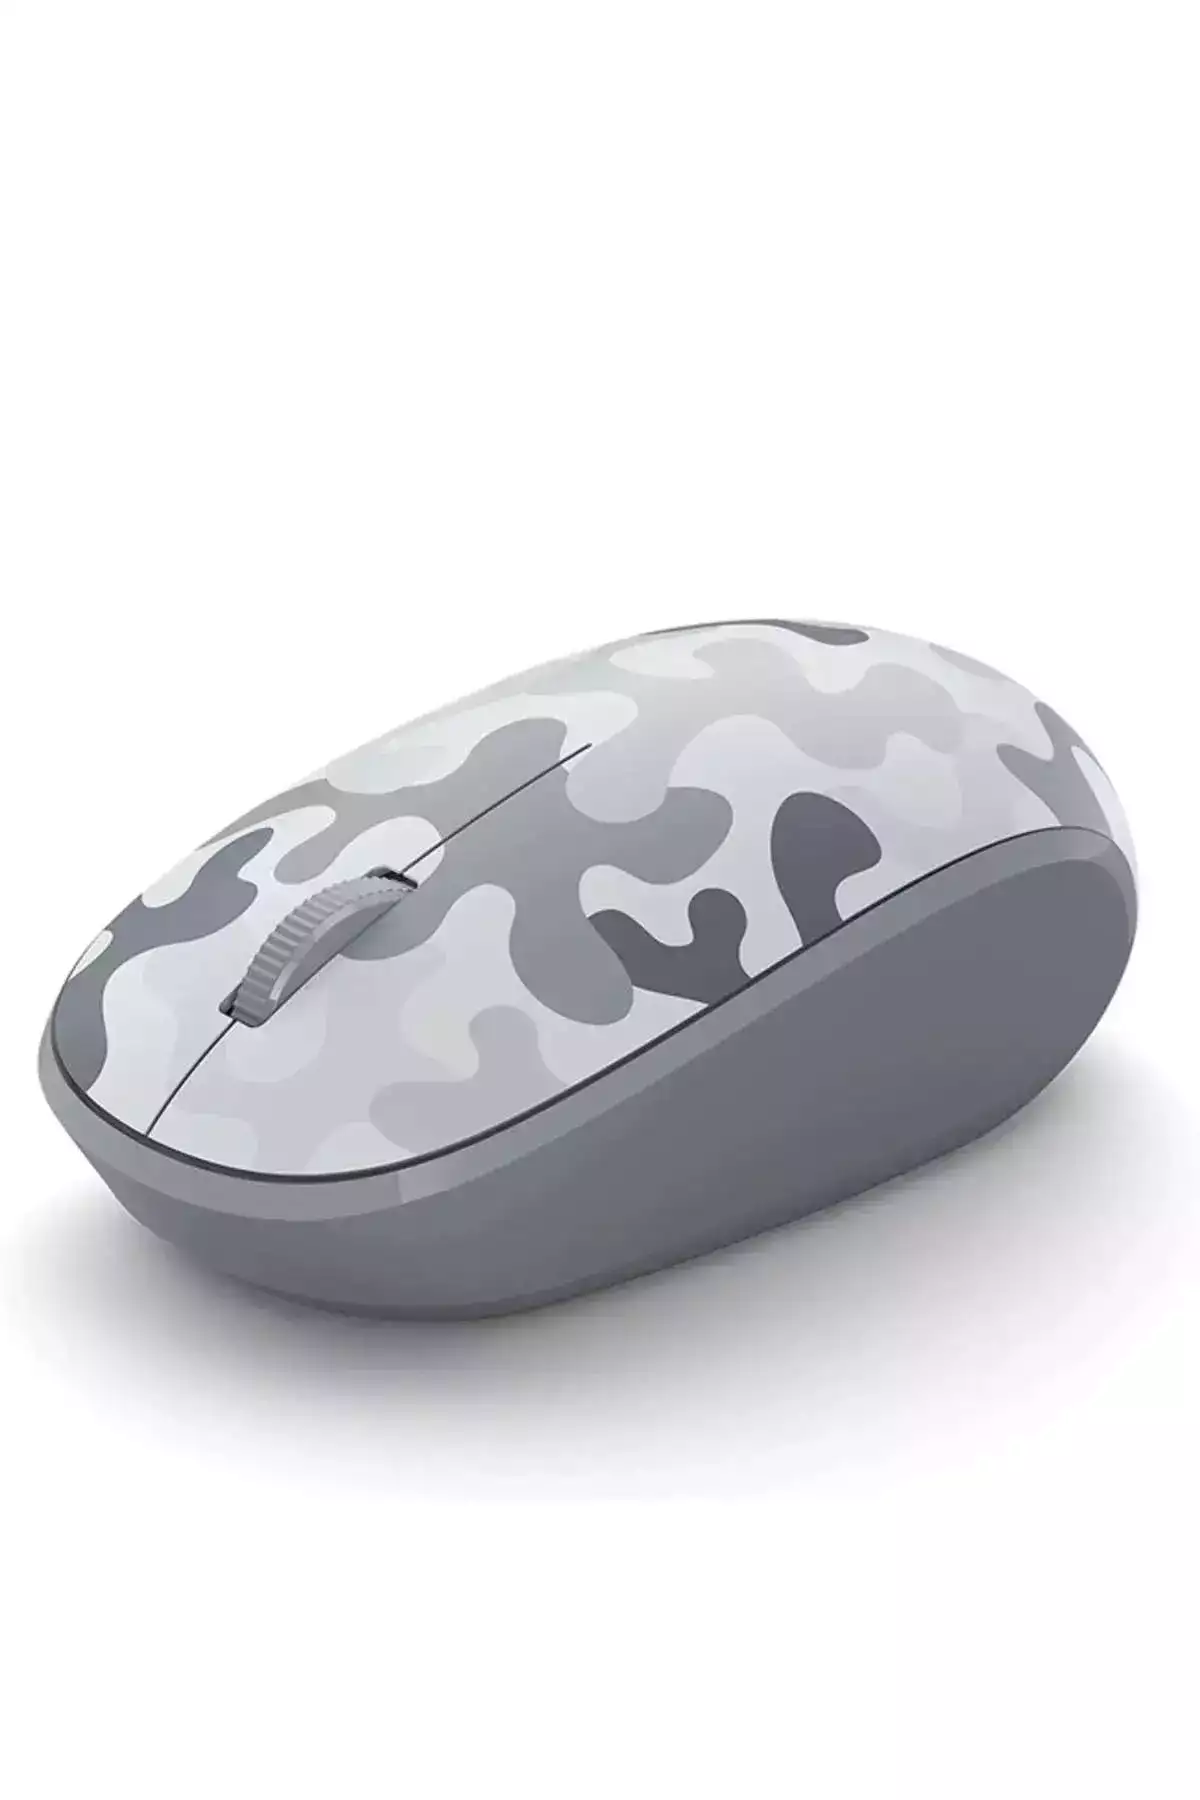 Microsoft Bluetooth Mouse White Camo 8KX-00009